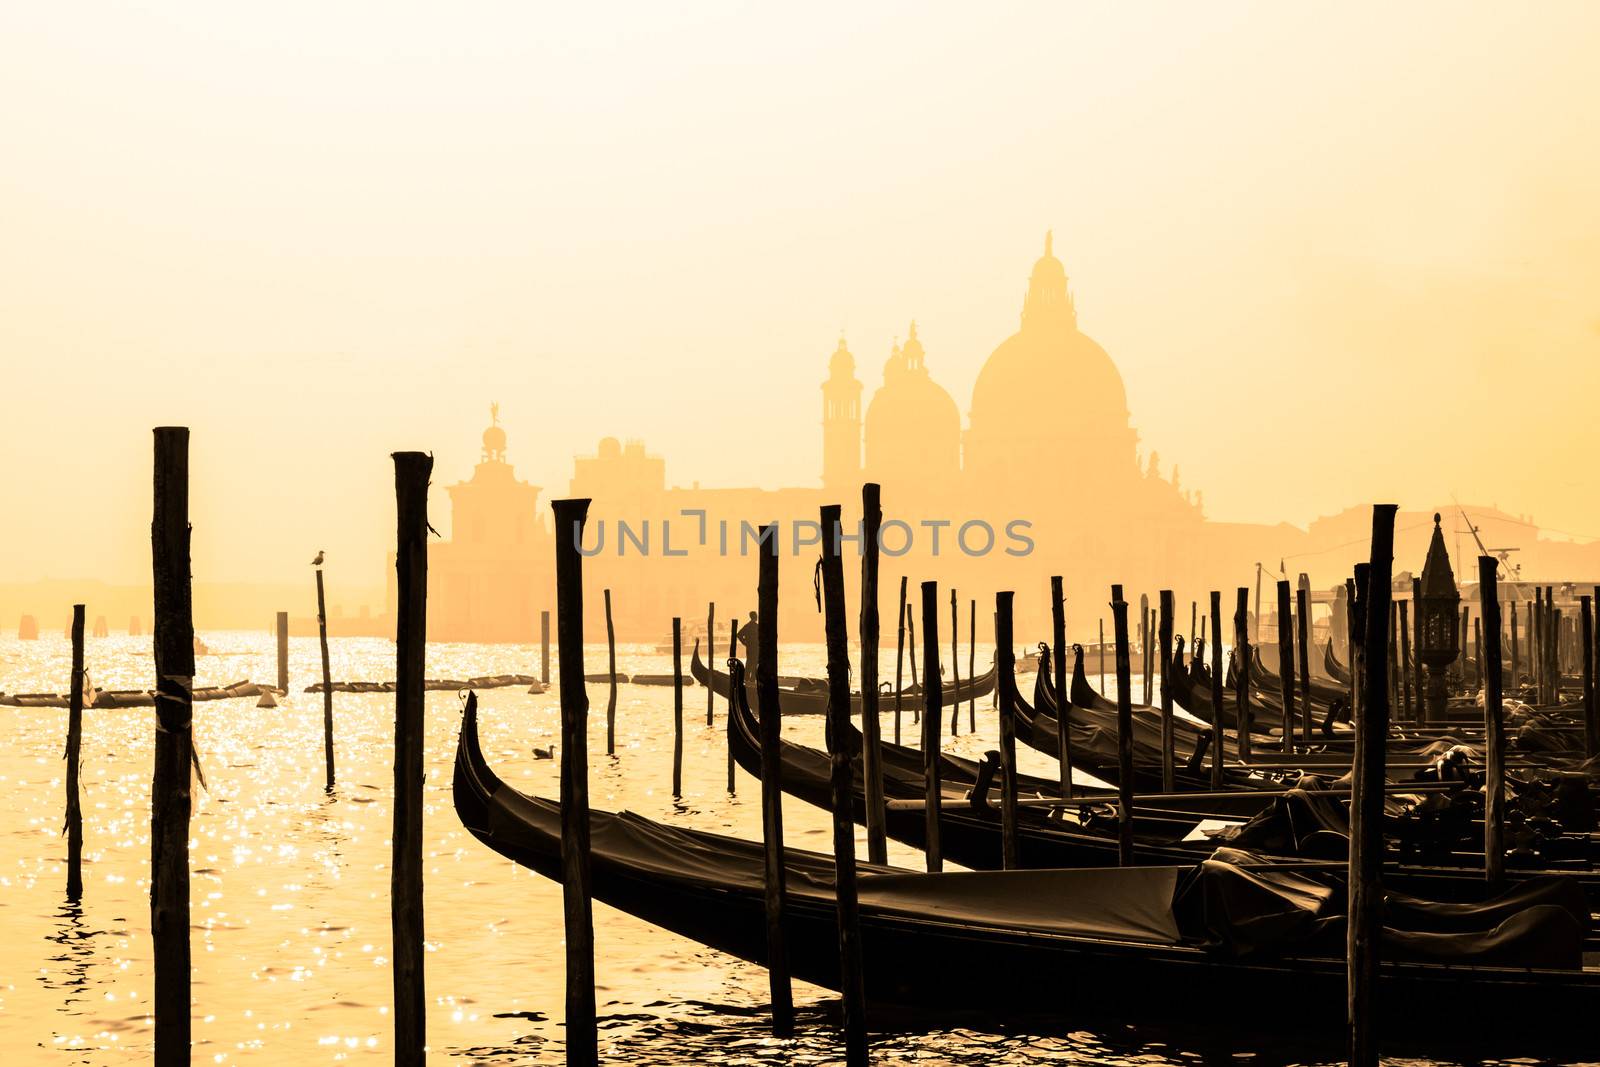 Romantic Italian city of Venice (Venezia), a World Heritage Site: traditional Venetian wooden boats, gondolier and Roman Catholic church Basilica di Santa Maria della Salute in the misty background.